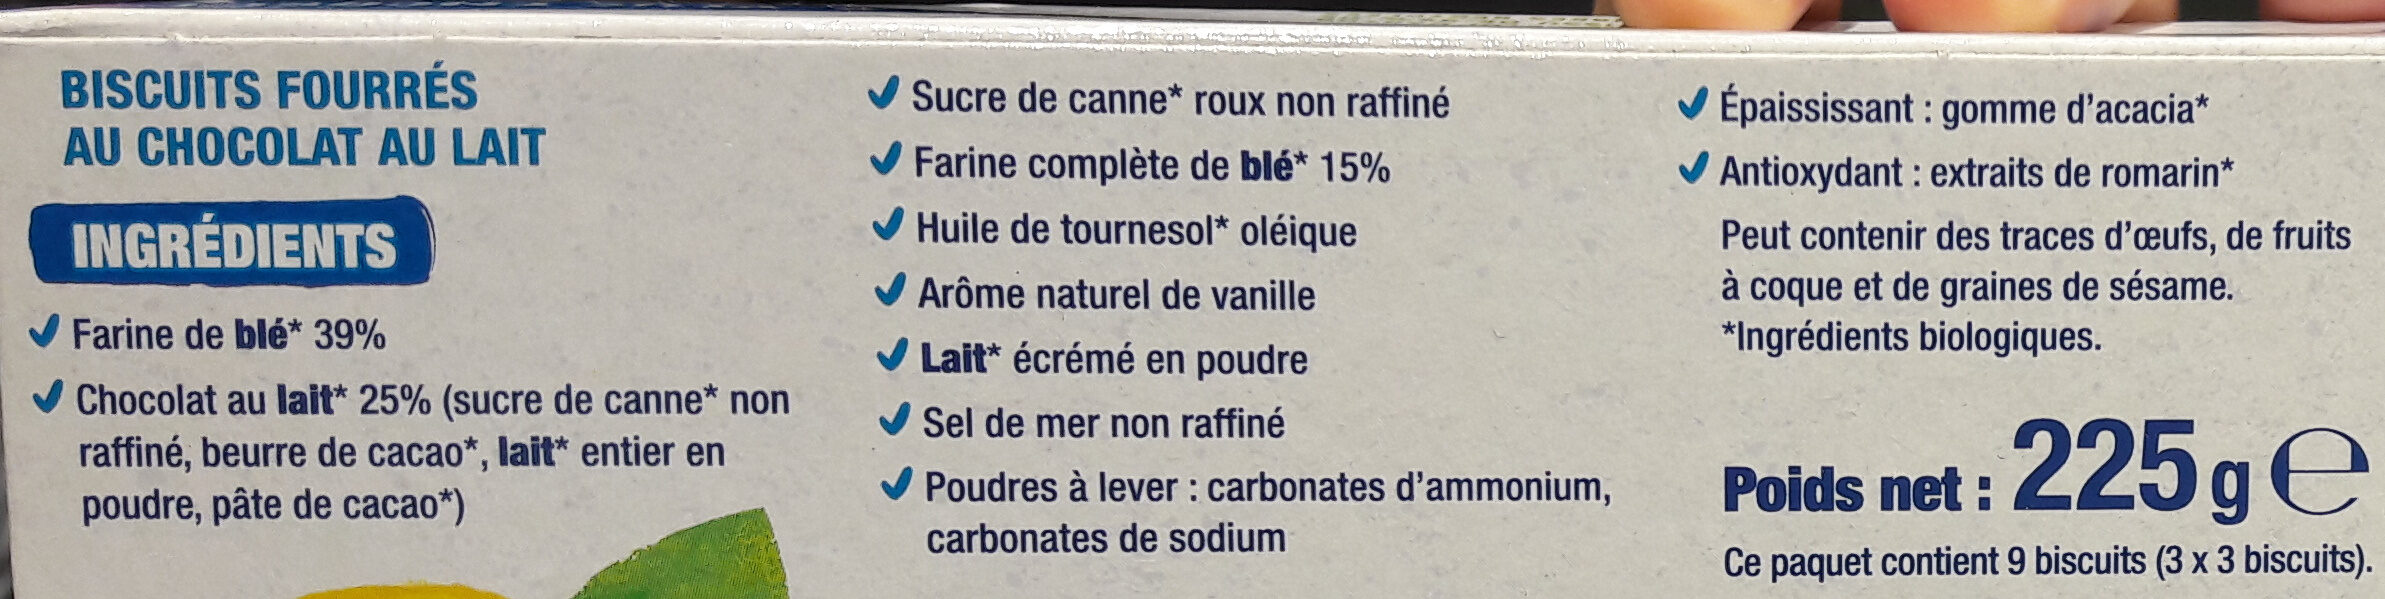 Fourrés Chocolat au lait BIO - 原材料 - fr